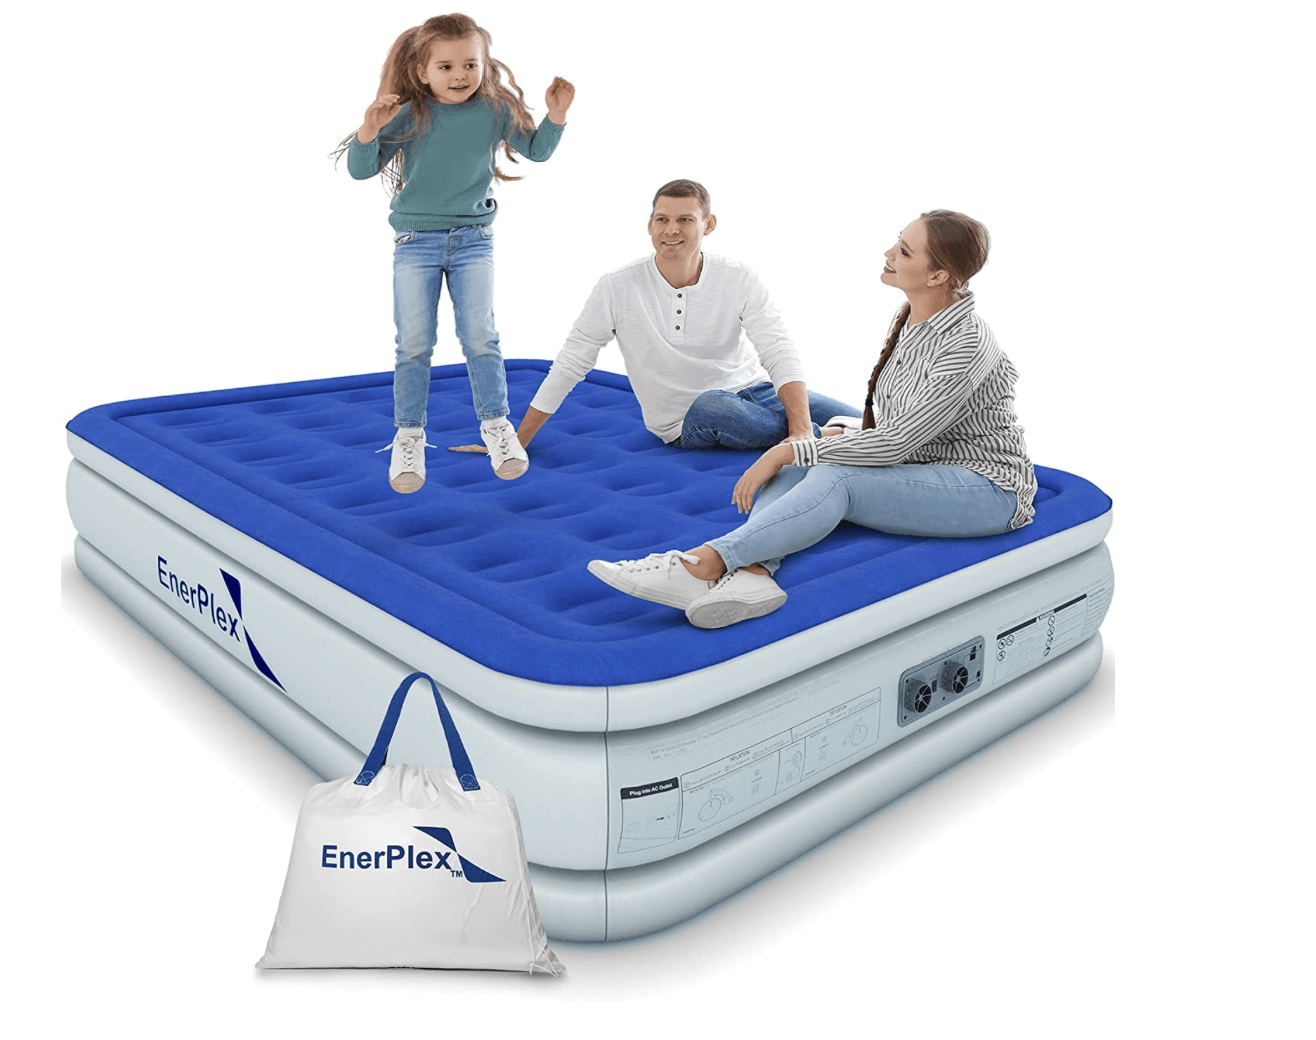 enerplex air mattress website